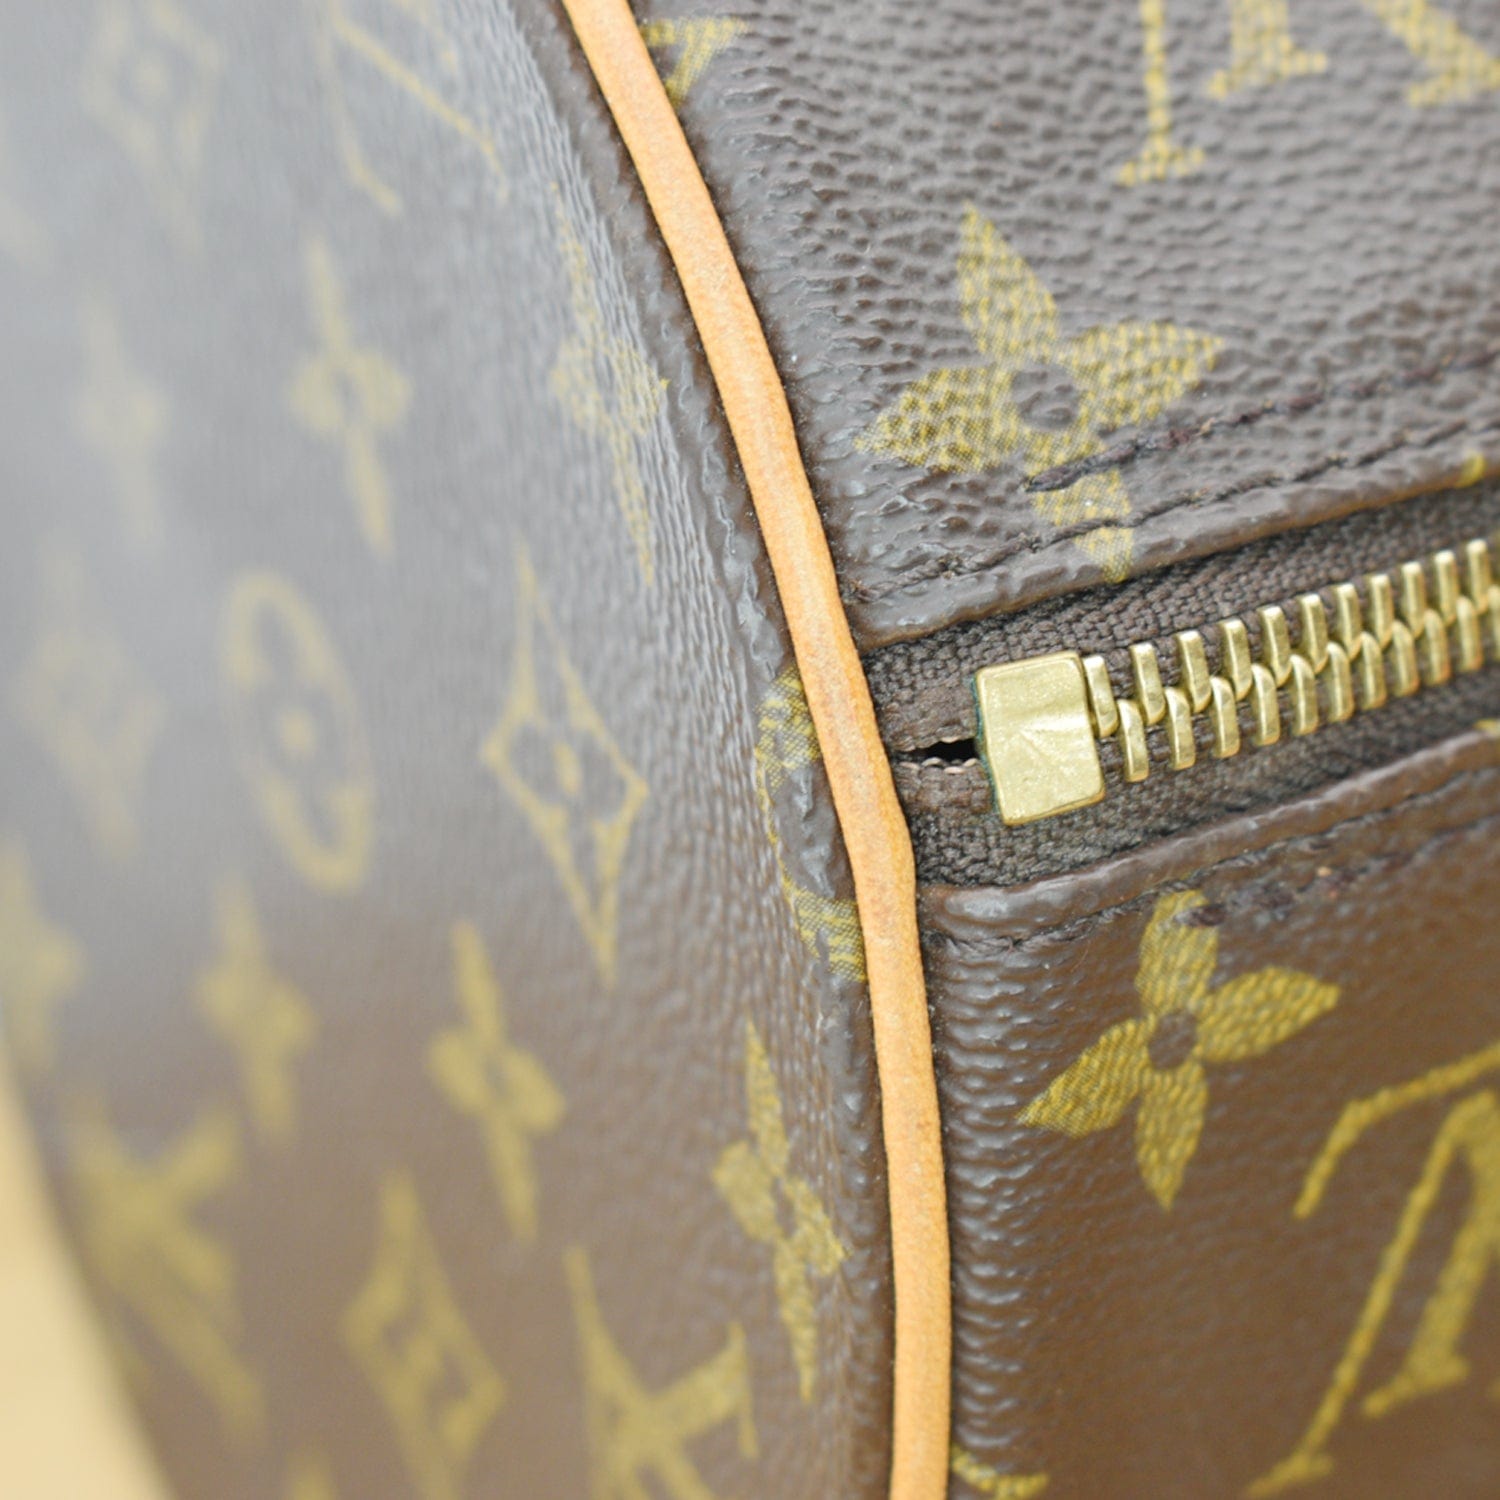 Papillon cloth handbag Louis Vuitton Brown in Cloth - 14782100